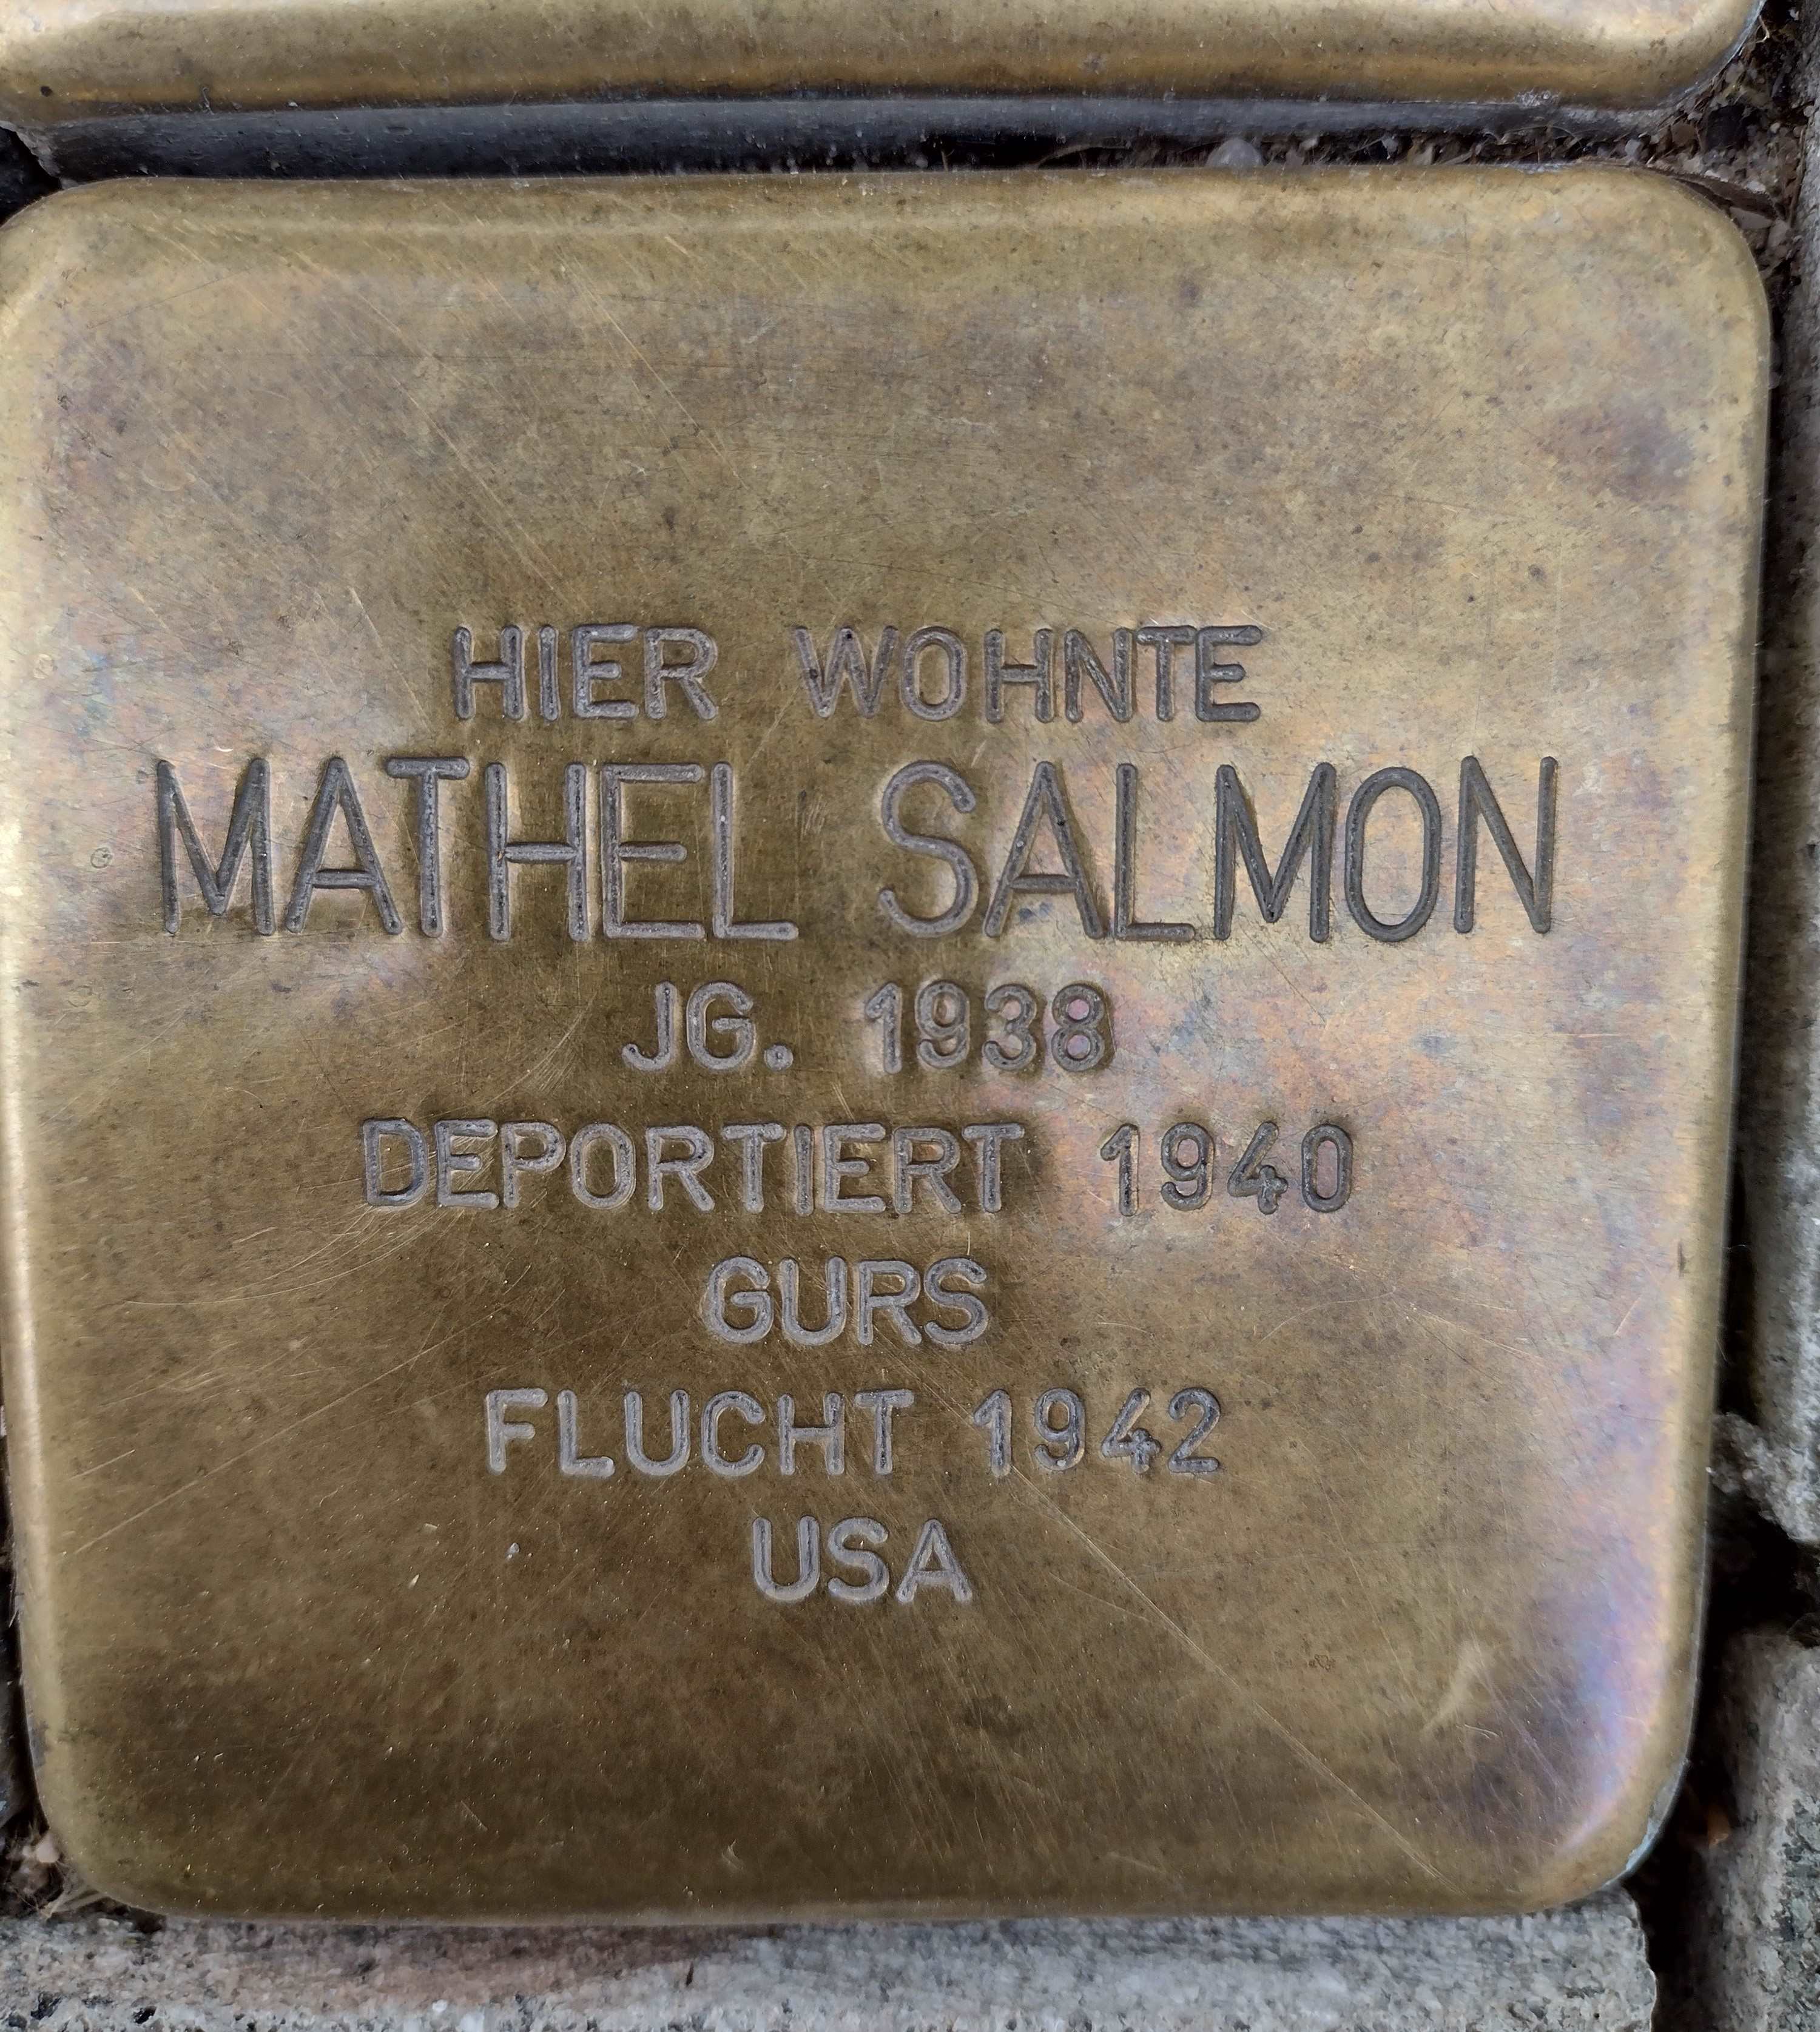 Stolperstein für Mathel Salmon in der Eisenbahnstraße 6, Foto: Matthias Pöhler